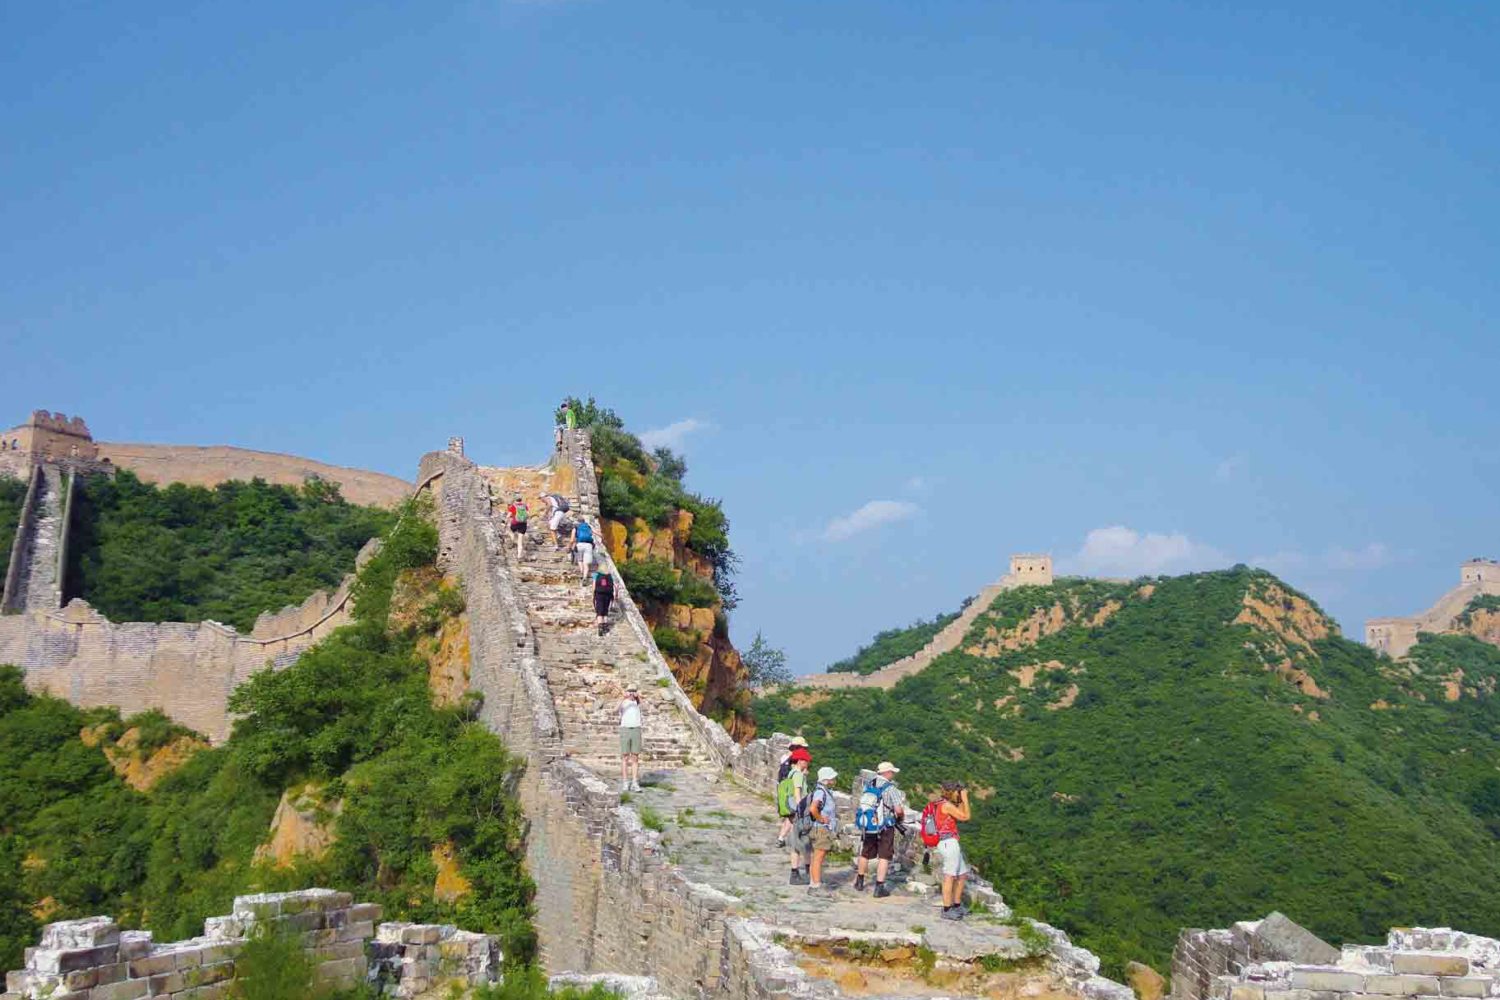 Wanderung auf der grossen Mauer, China